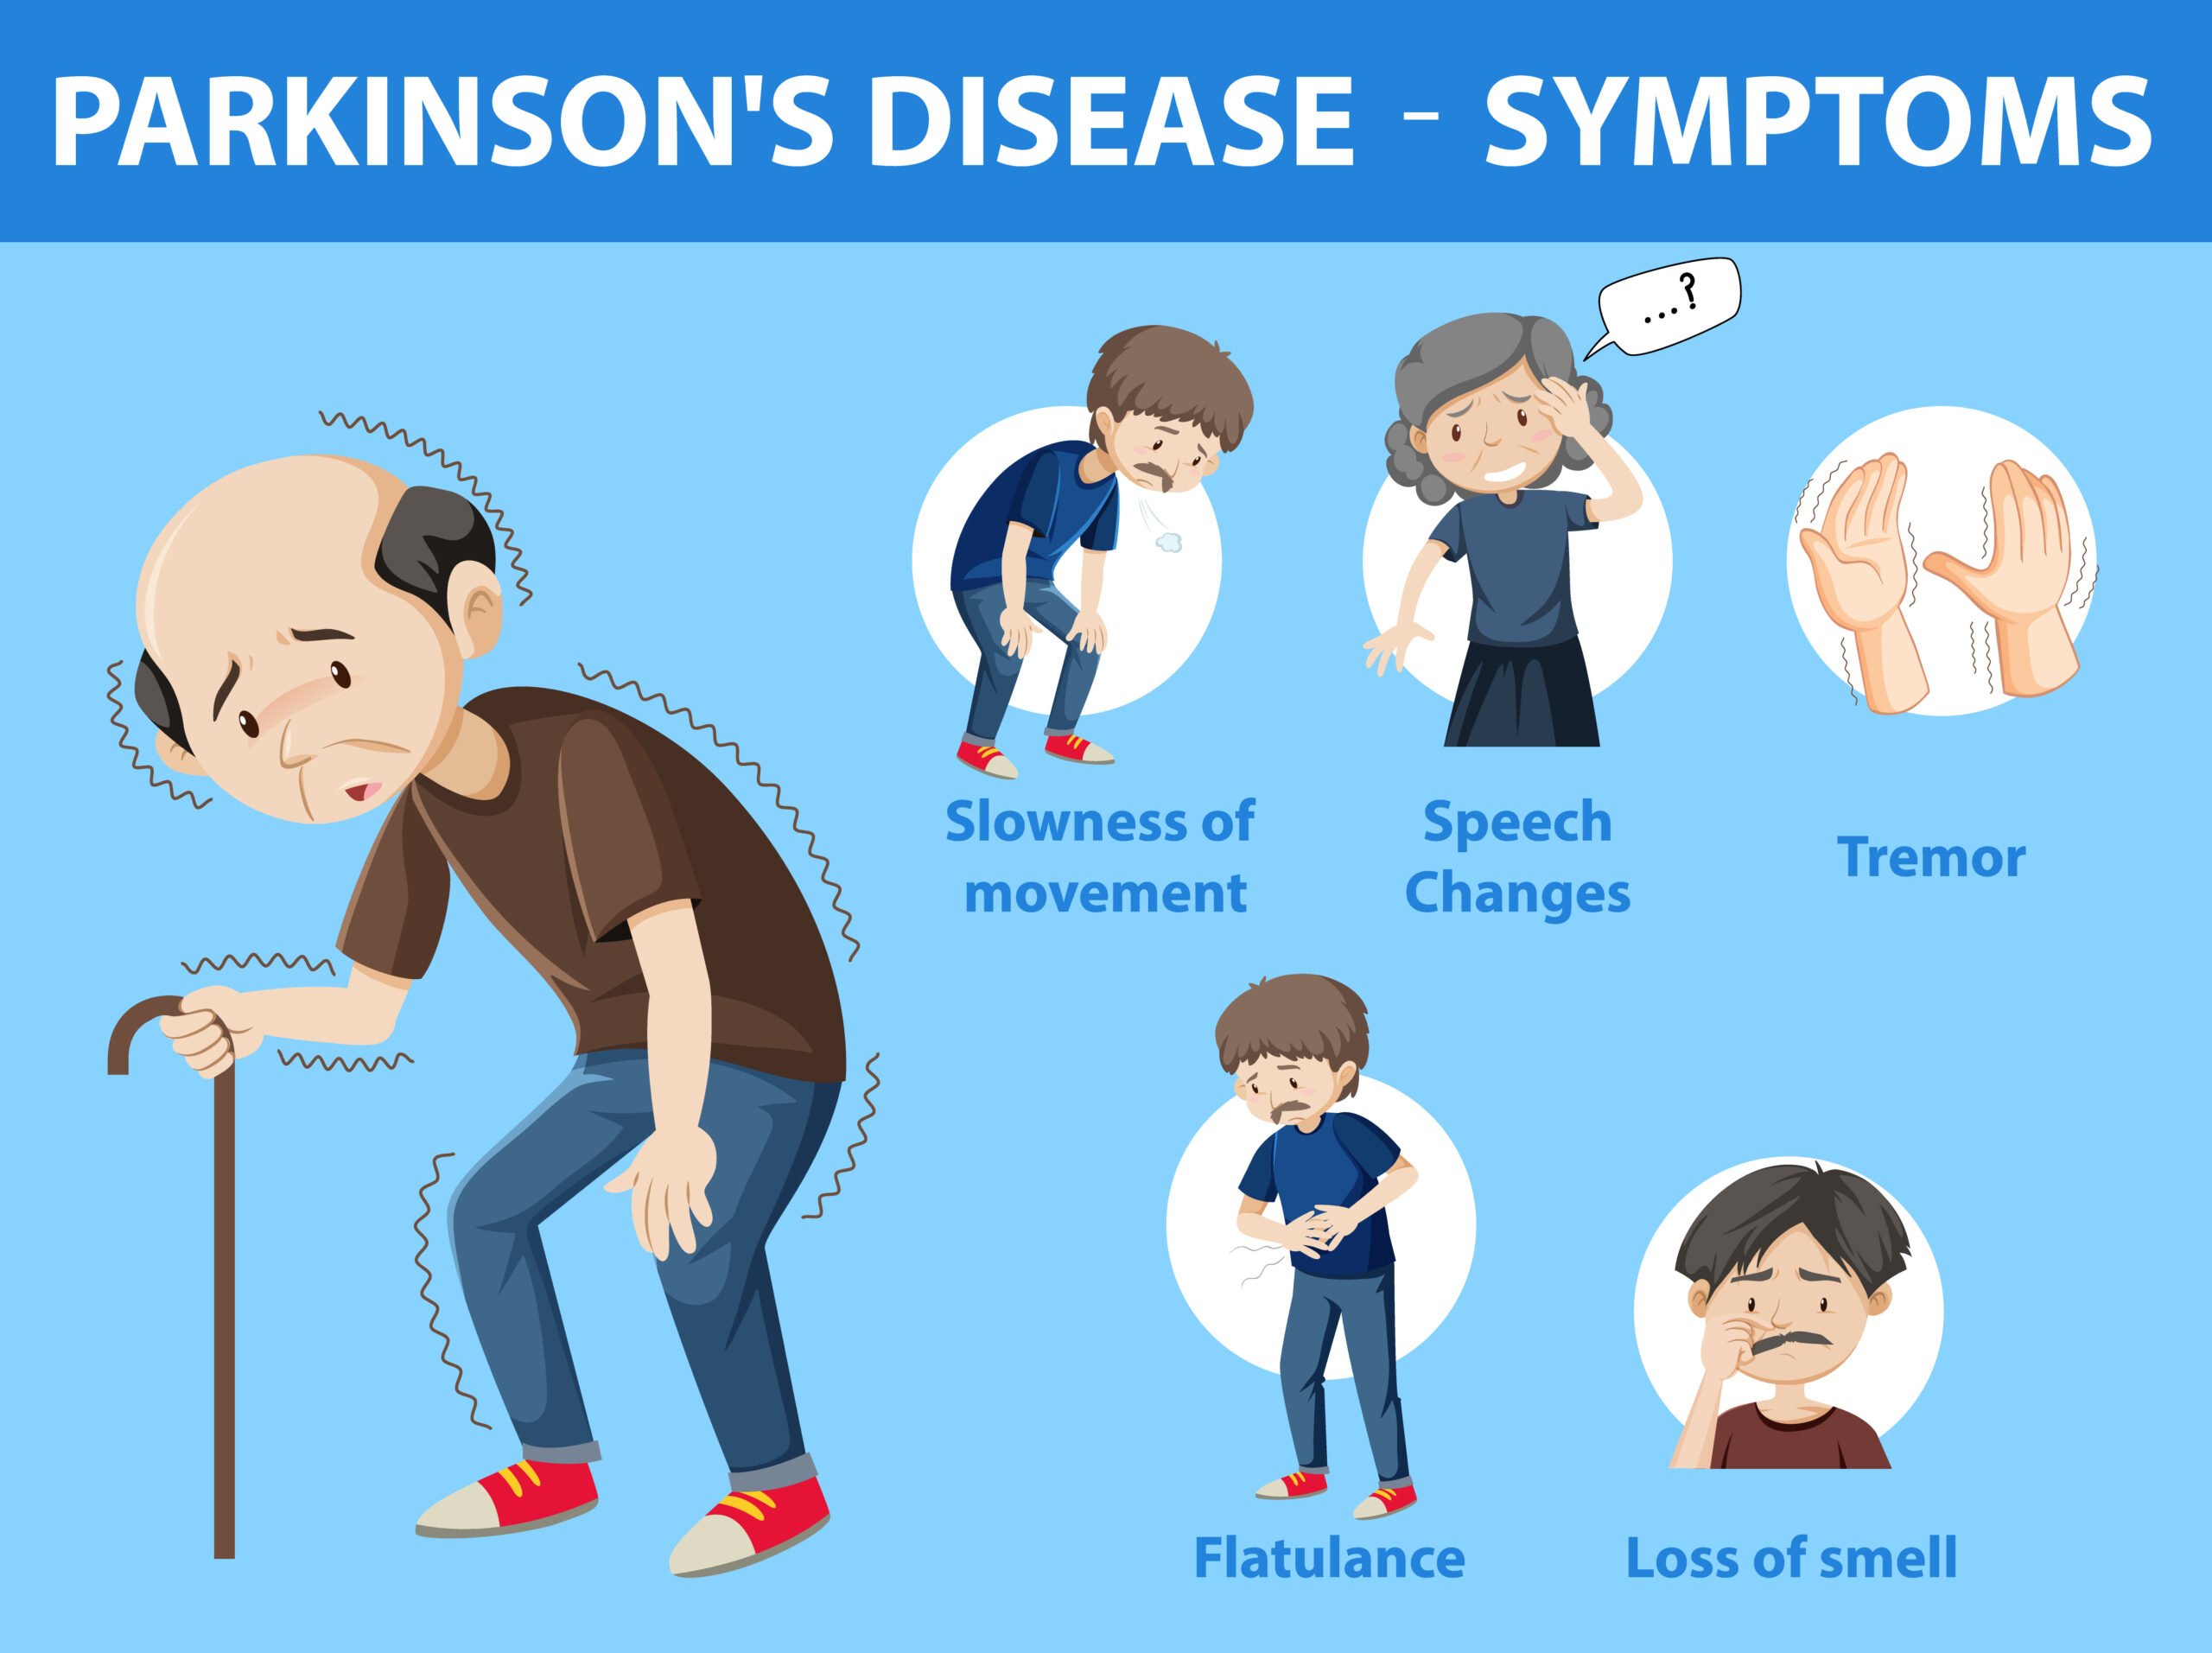 Parkinson disease symptoms infographic